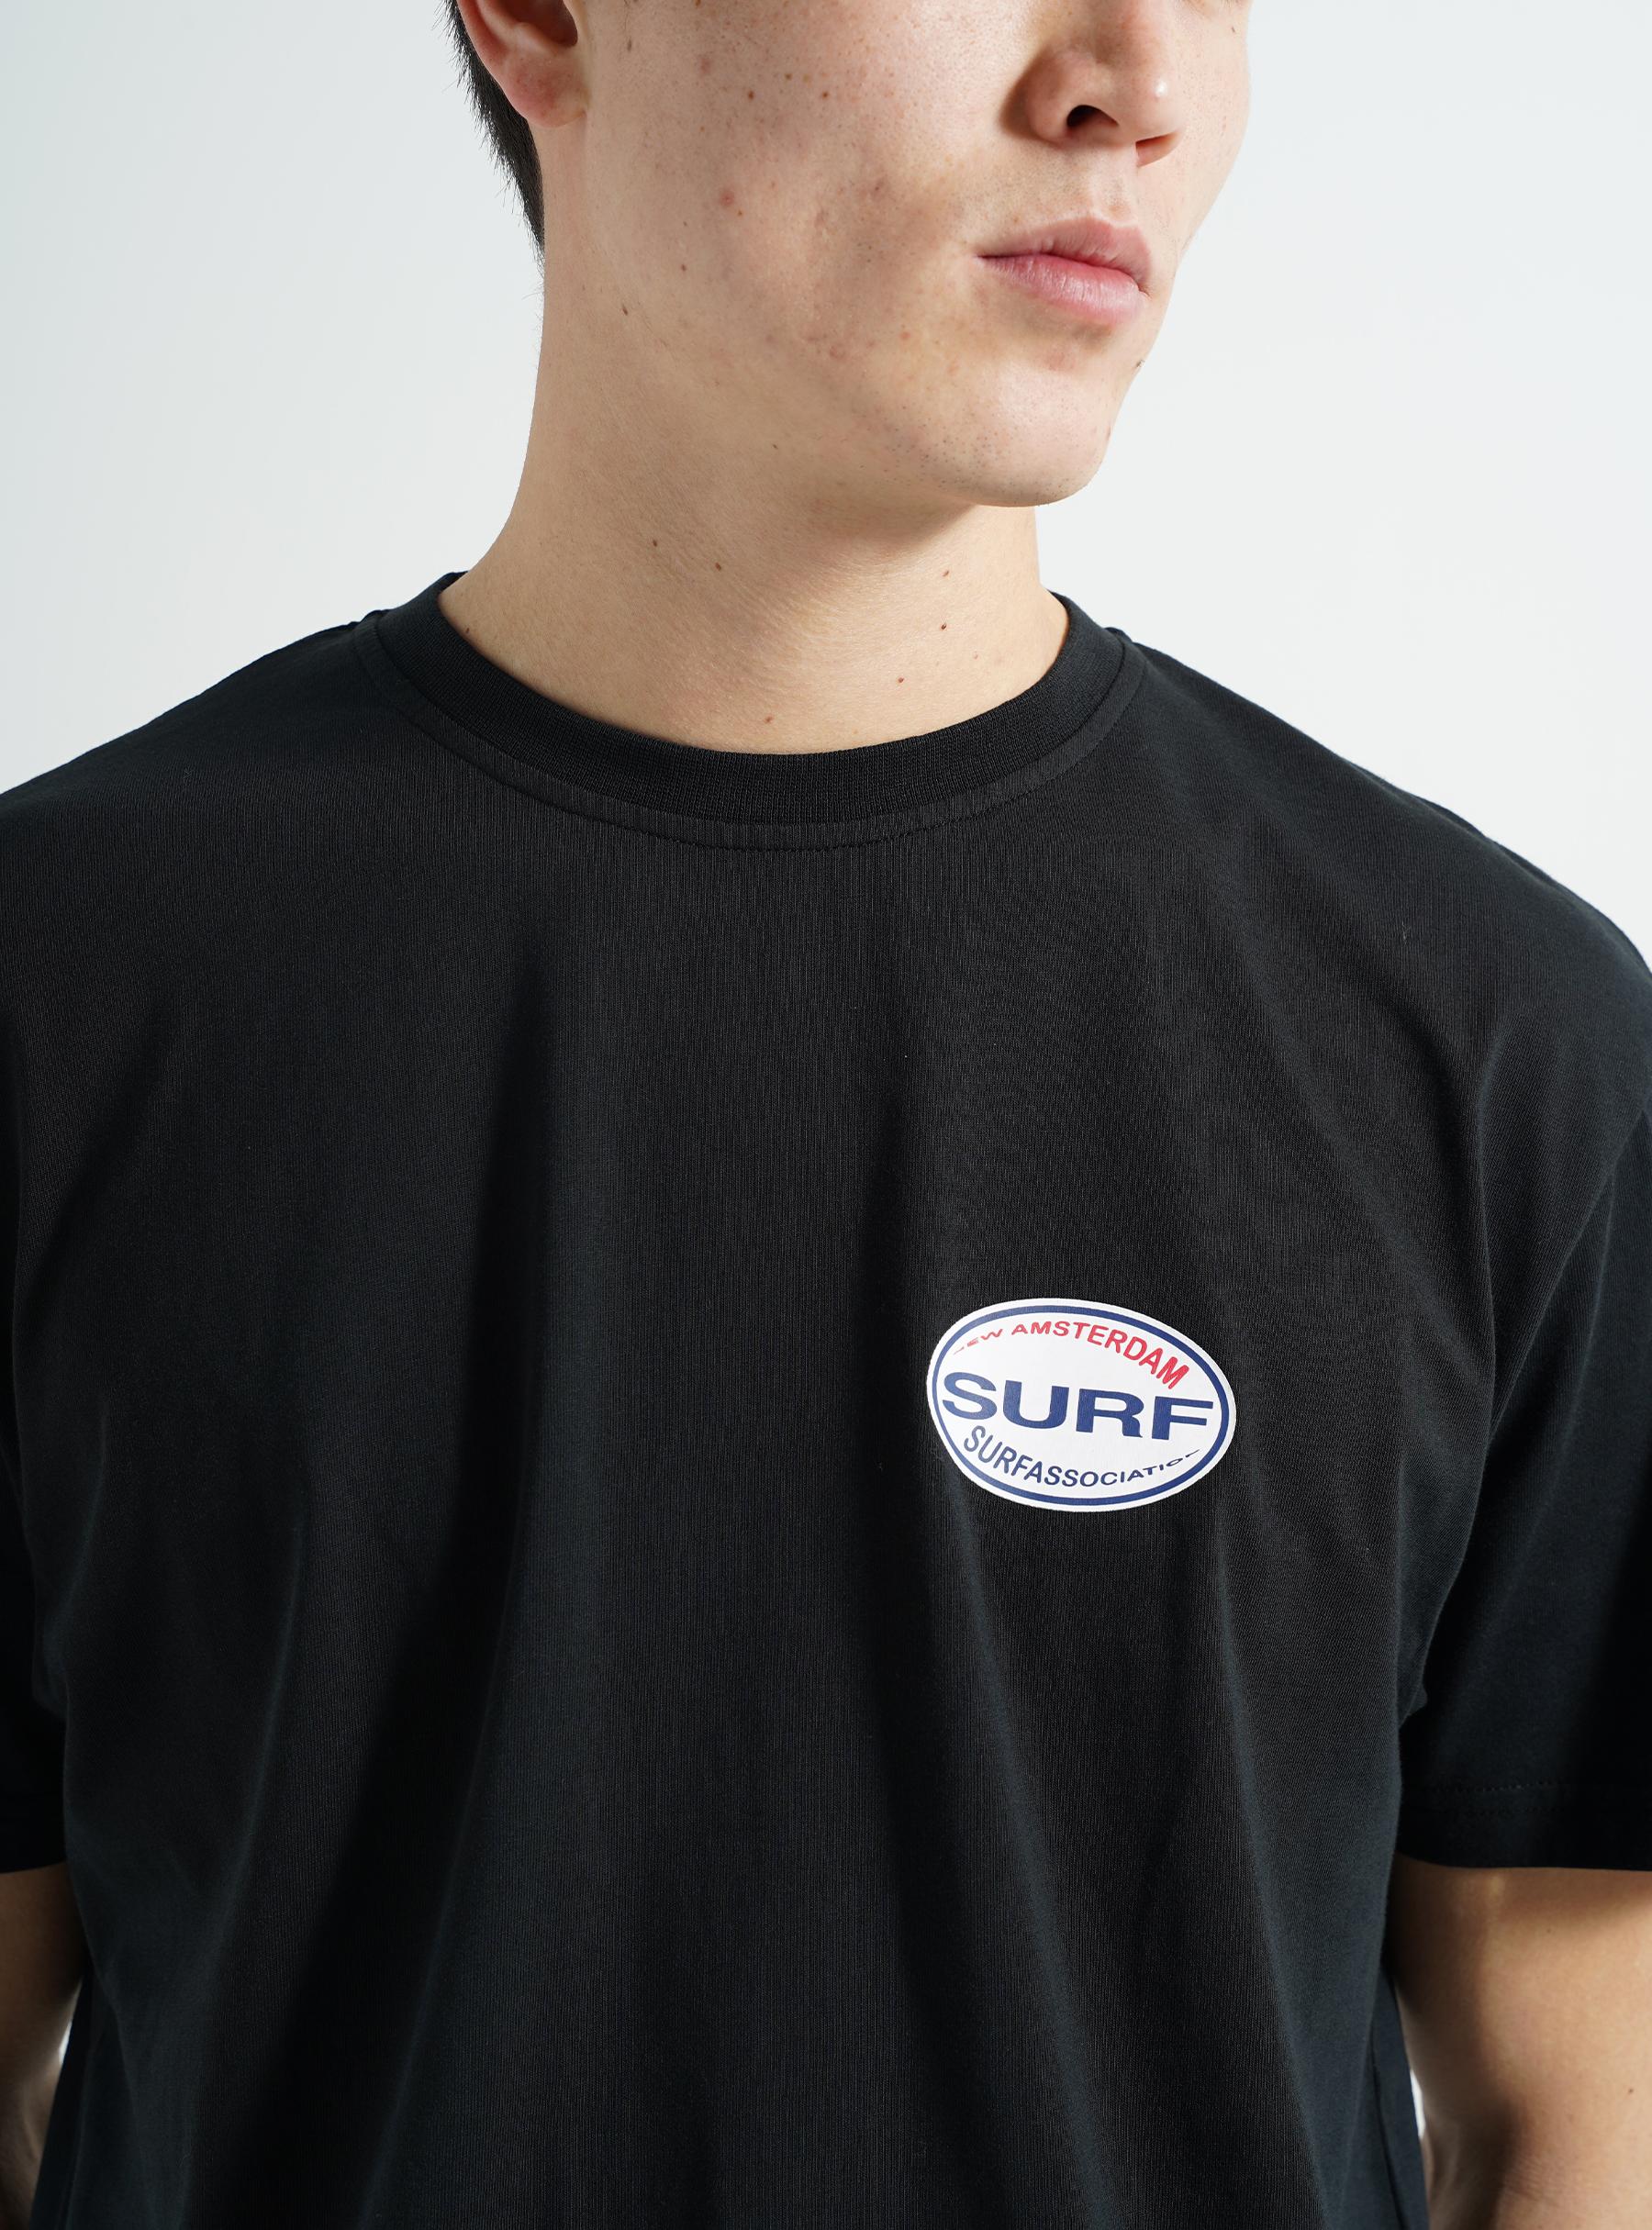 Surf T-shirt Black 2302051001